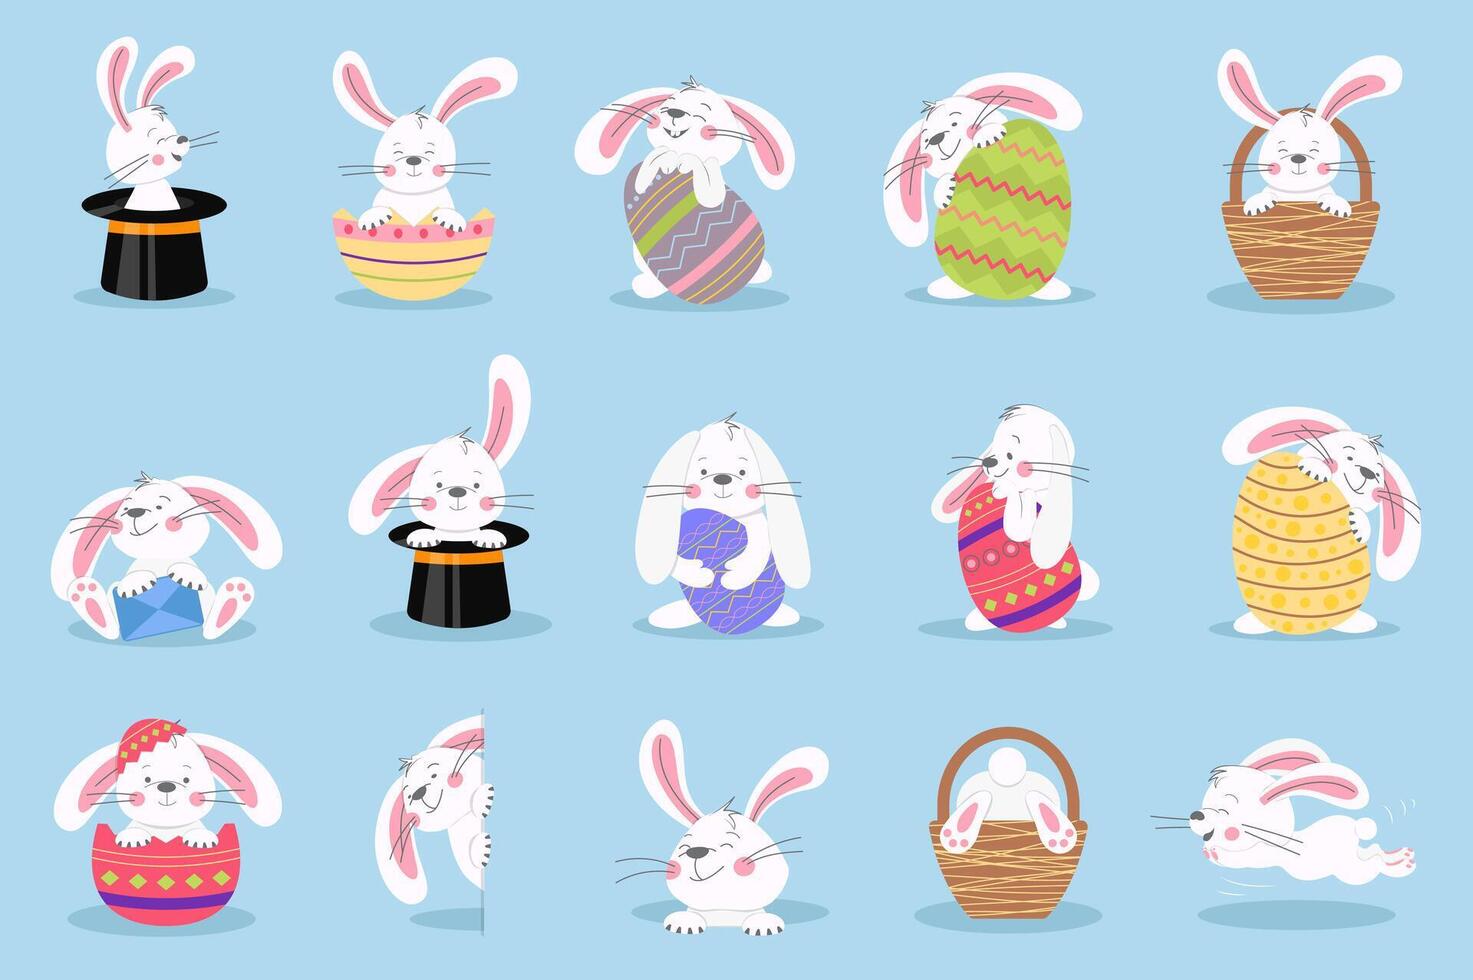 påsk kanin uppsättning grafisk element i platt design. bunt av söt vit kaniner innehav färgrik ägg med annorlunda festlig mönster, sitta i svart hattar eller korgar. vektor illustration isolerat objekt